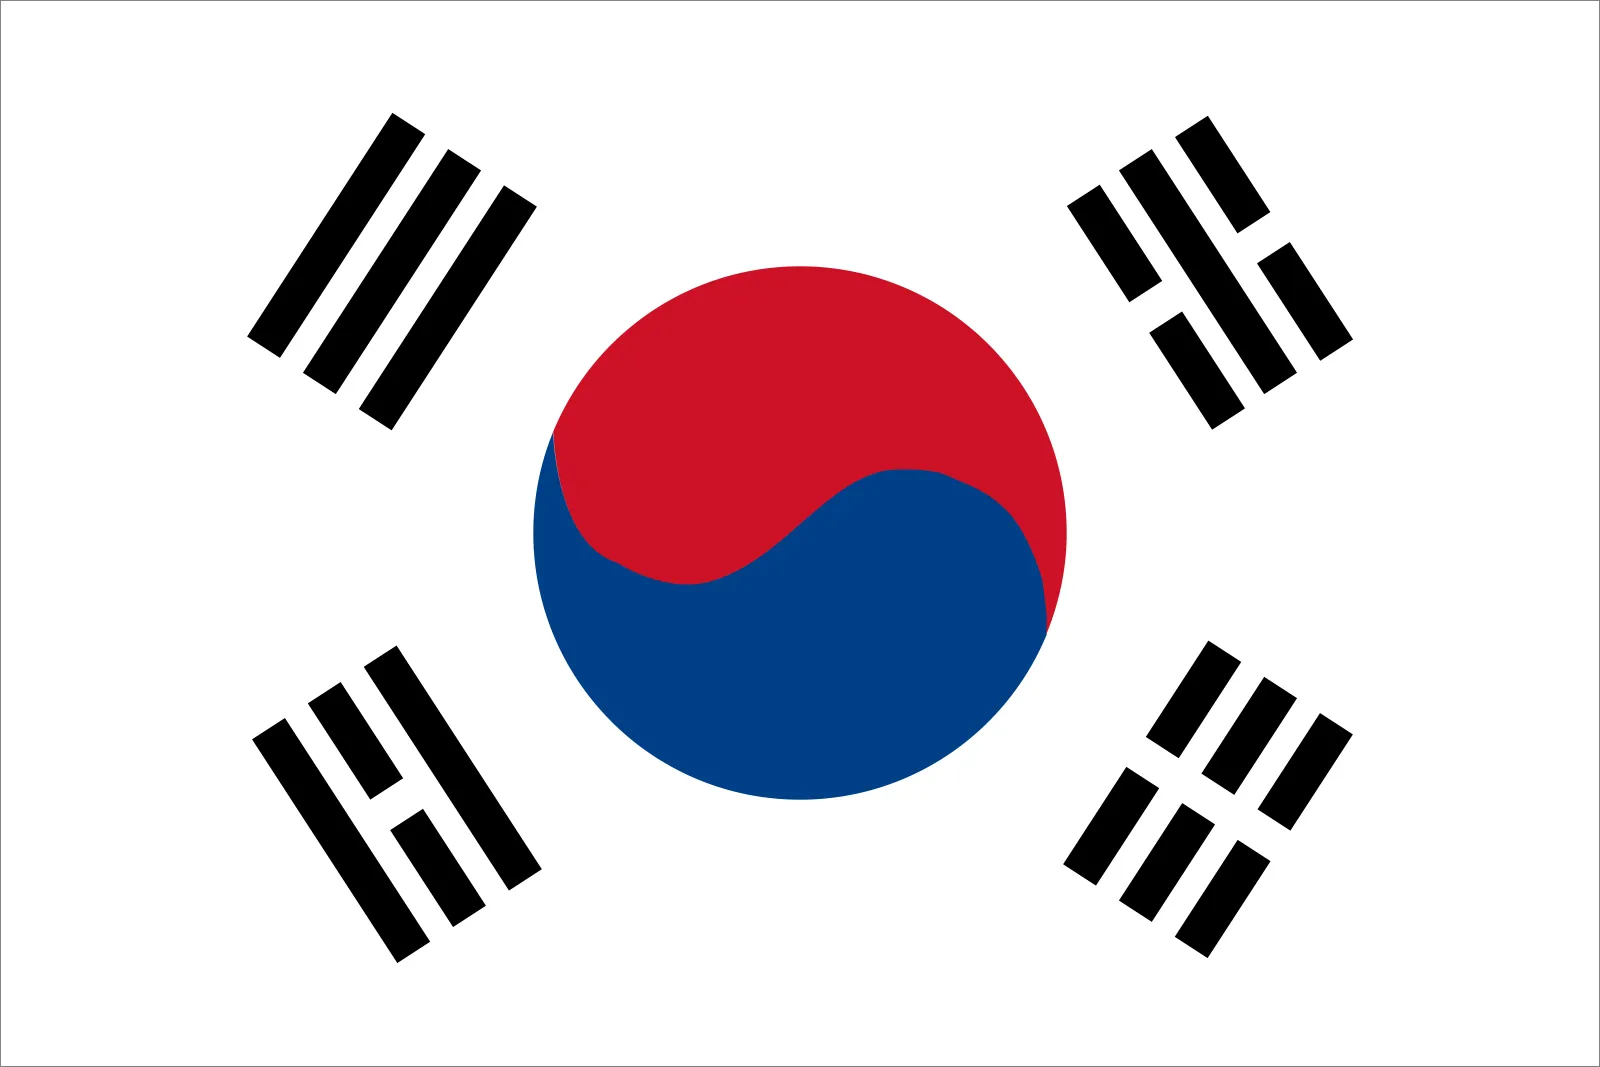 दक्षिण कोरियाको उत्पादक मूल्य उकालो लाग्दै